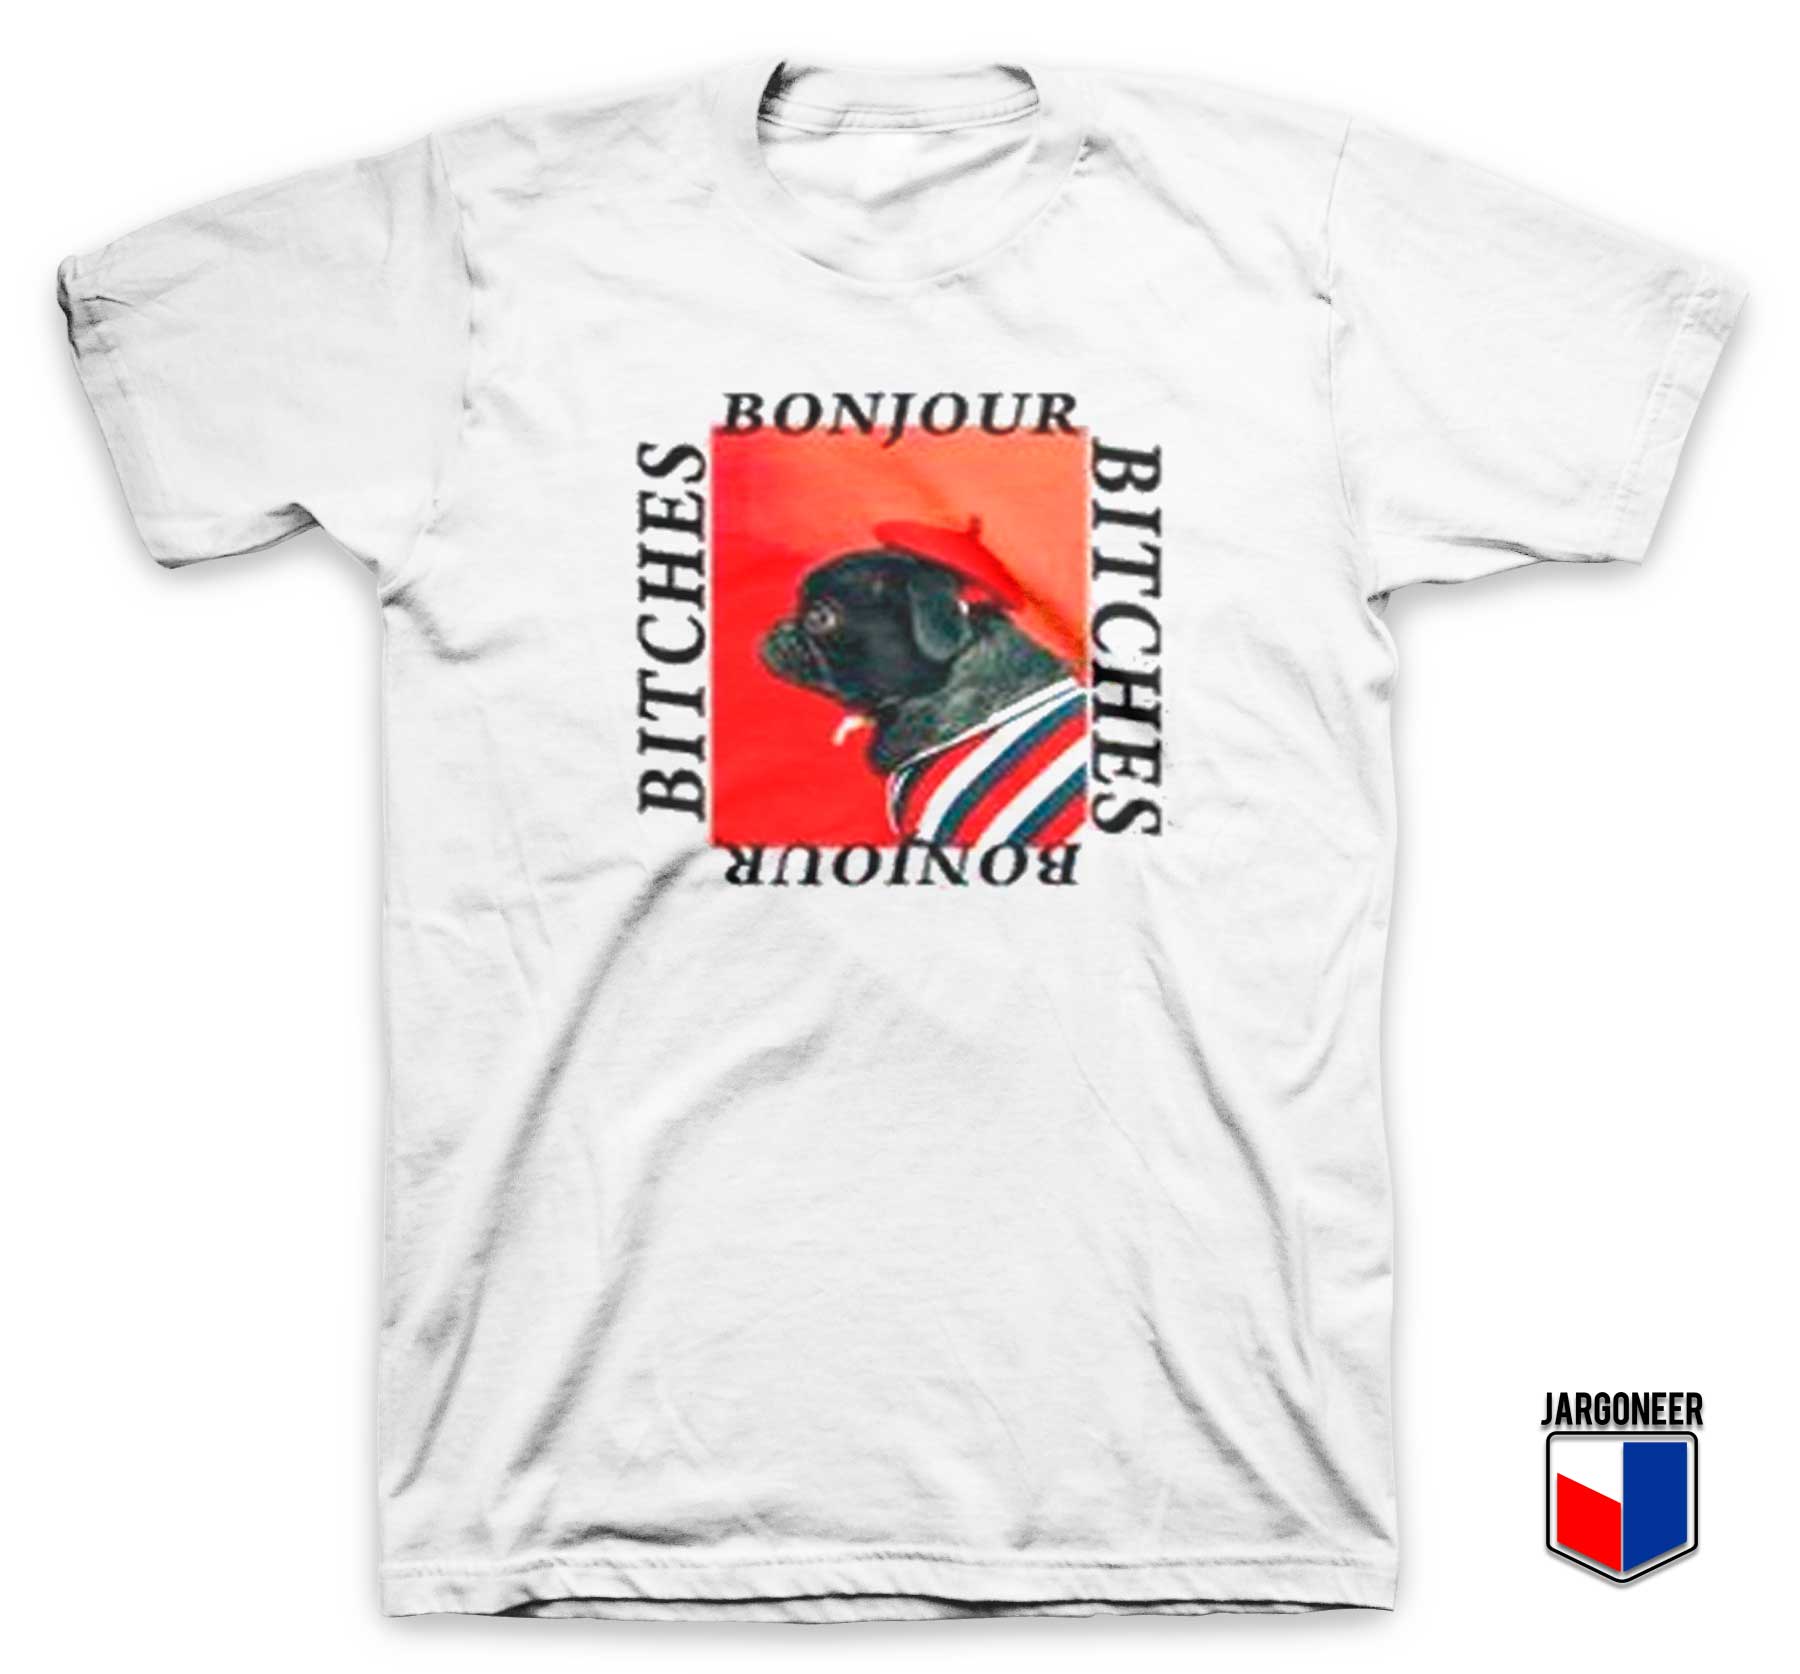 Bonjour Bitches T Shirt - Shop Unique Graphic Cool Shirt Designs